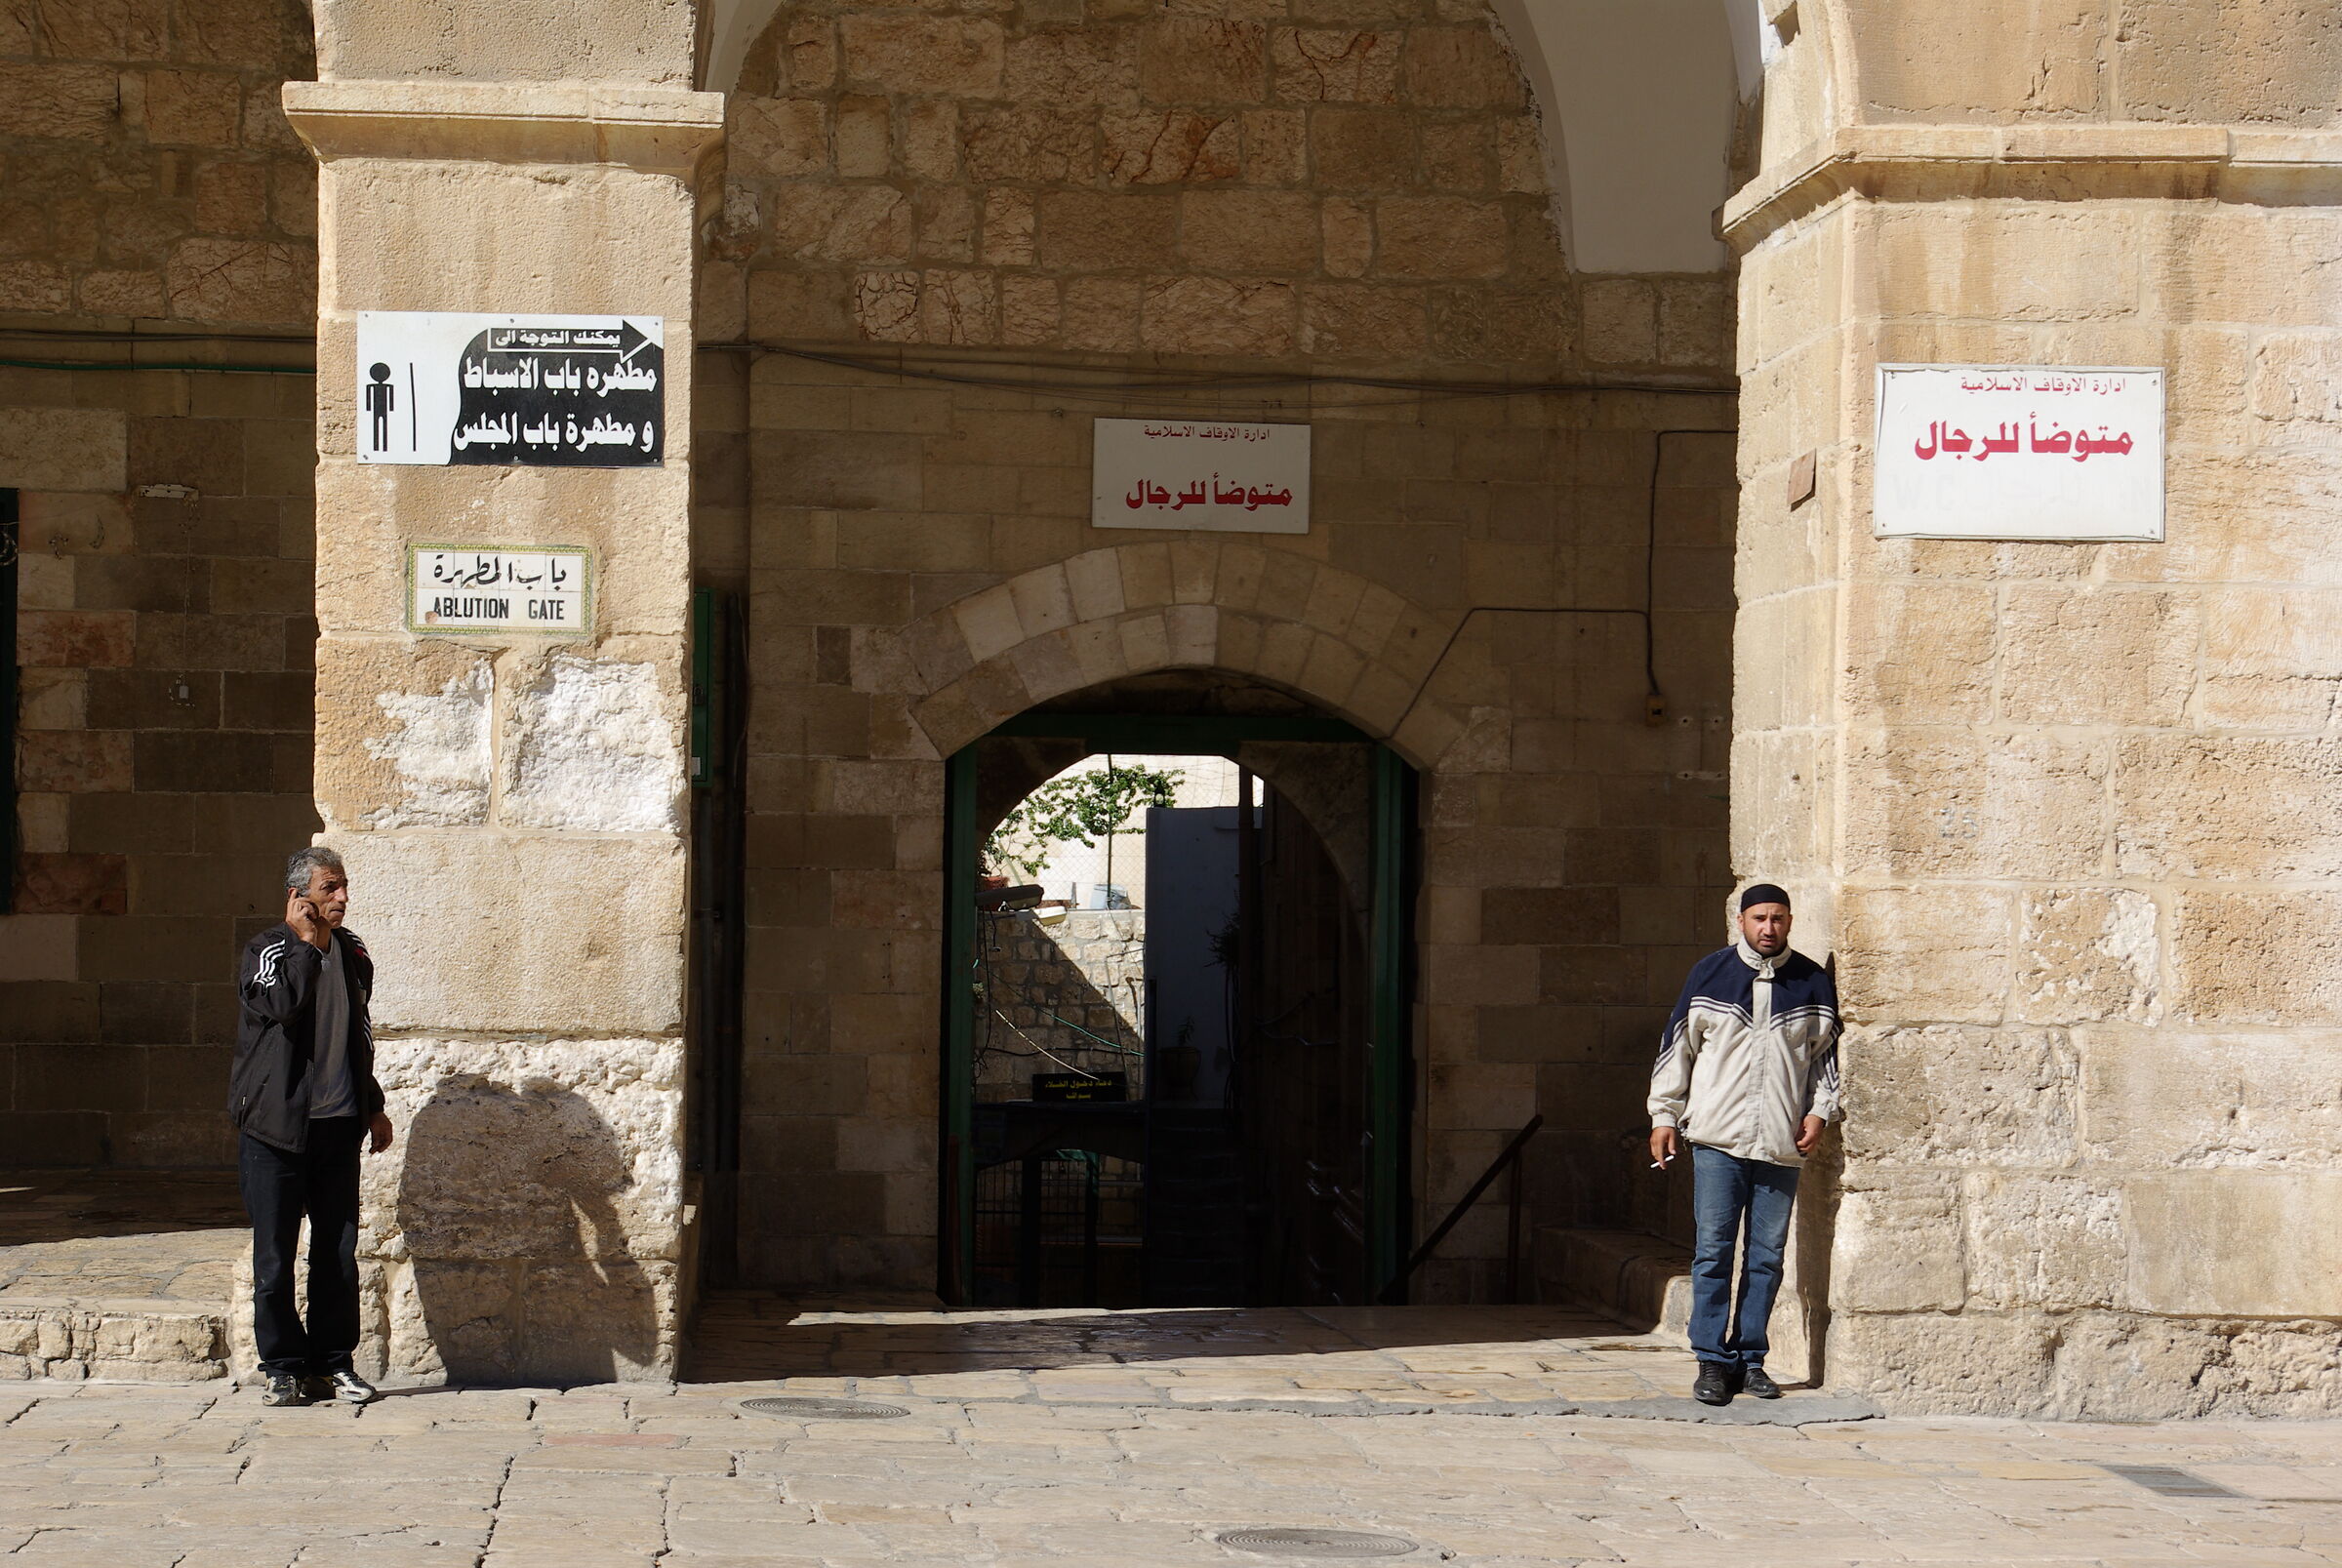 Jerusalem - Ablution Gate...